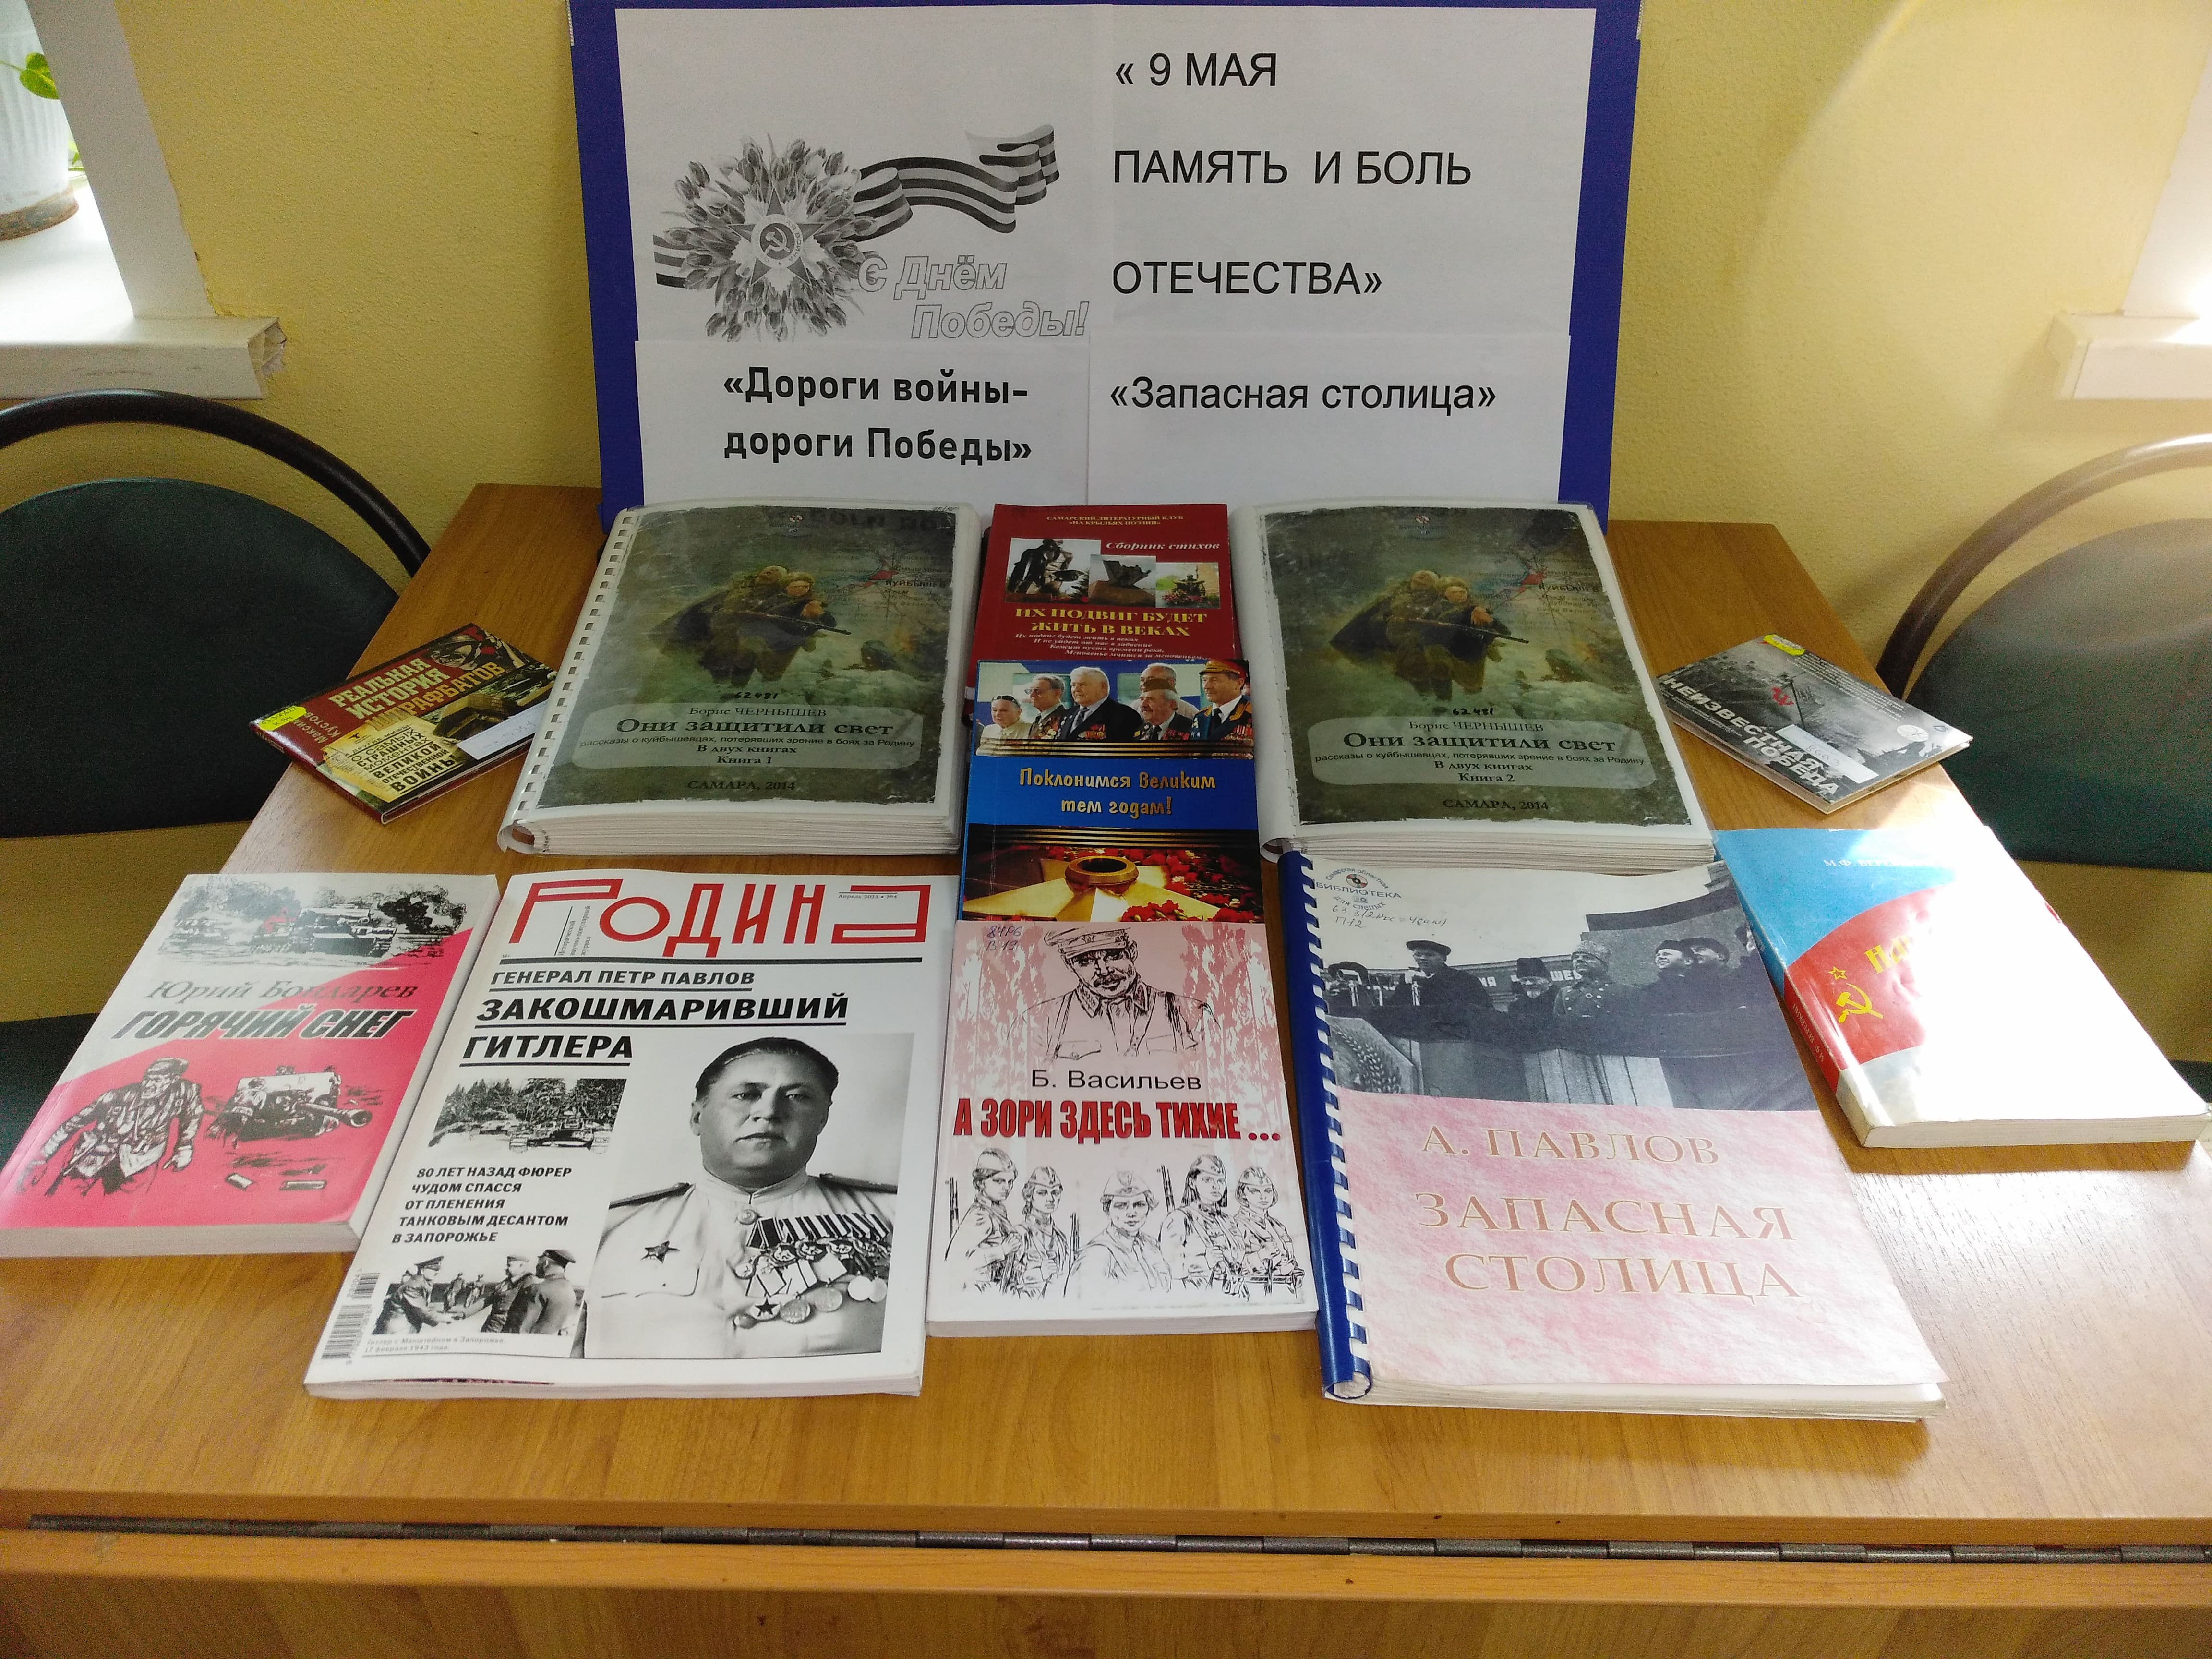 «9 Мая - память и боль Отечества»: книжная выставка,  посвященная Дню Победы